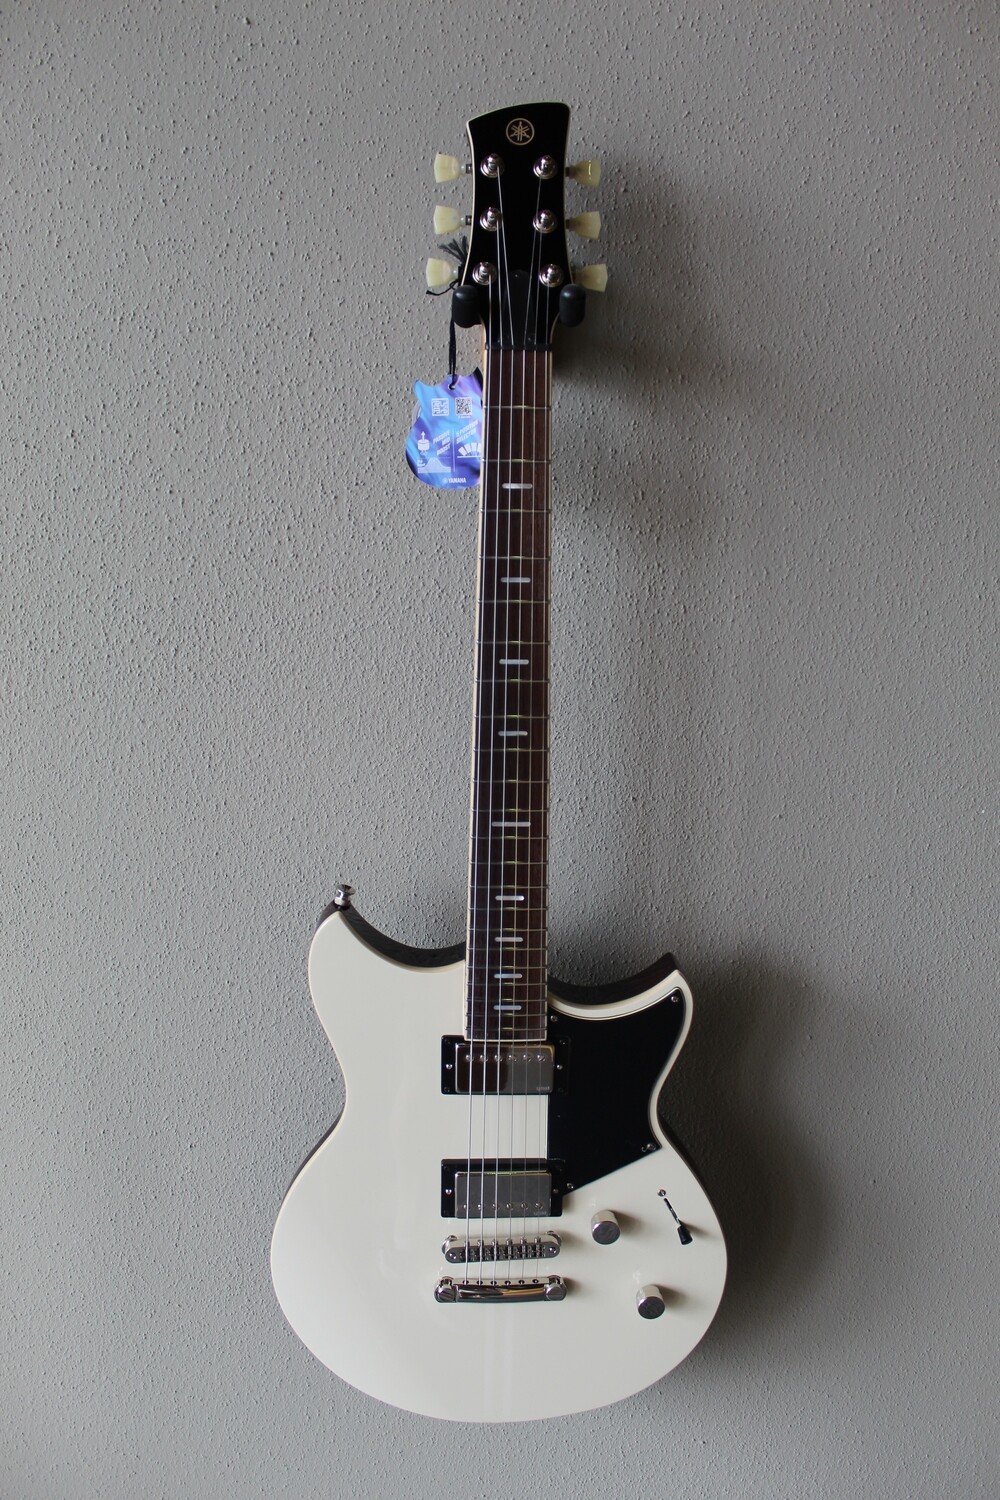 Yamaha RSS20-VW Revstar Standard Electric Guitar with Gig Bag - Vintage White